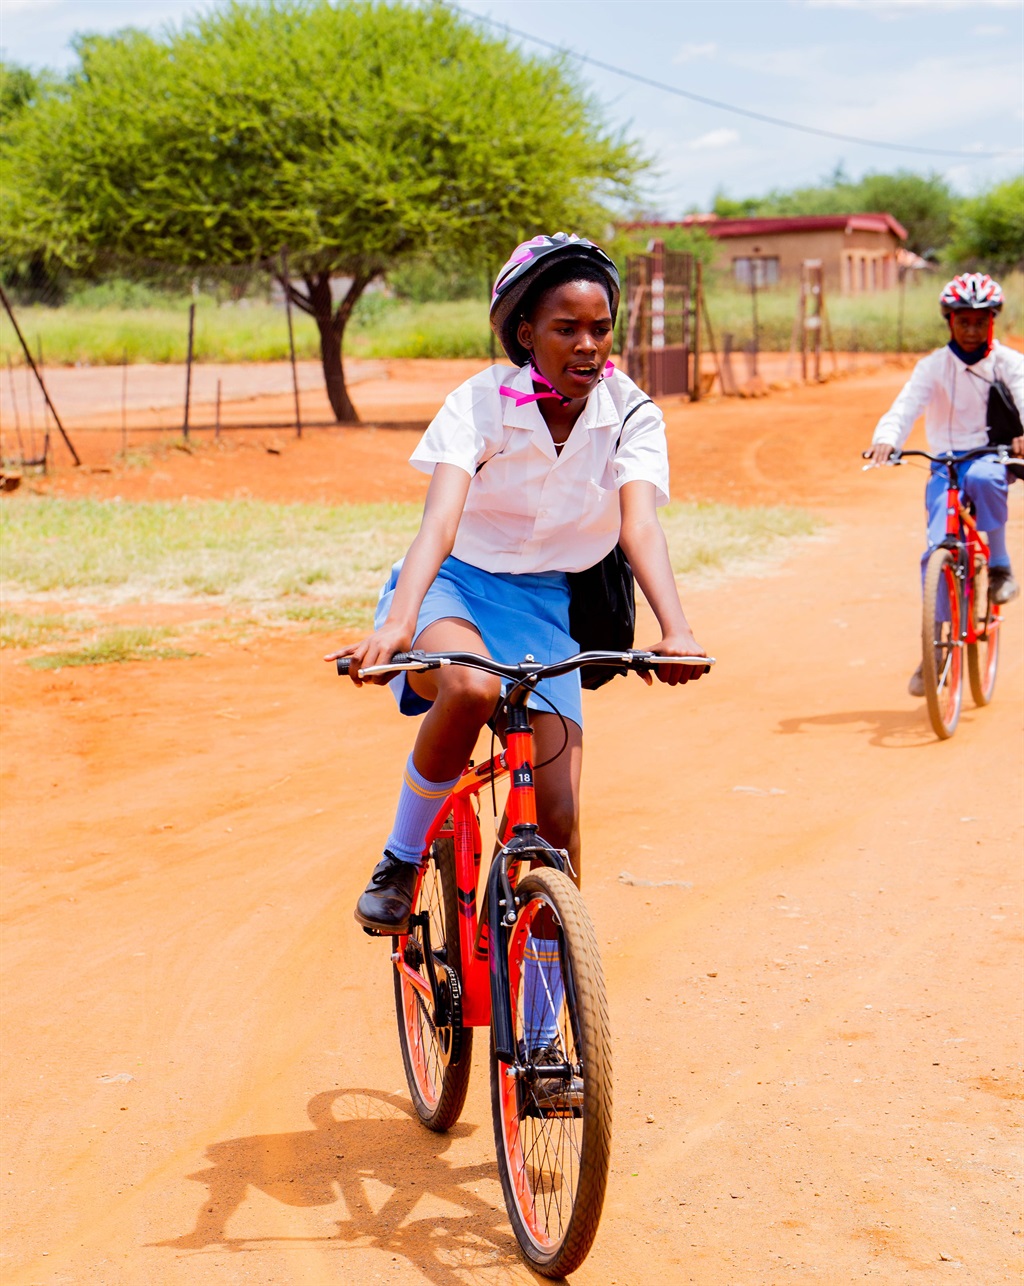 100 sepeda gunung disumbangkan ke sekolah North West agar mereka bisa masuk kelas dengan mudah